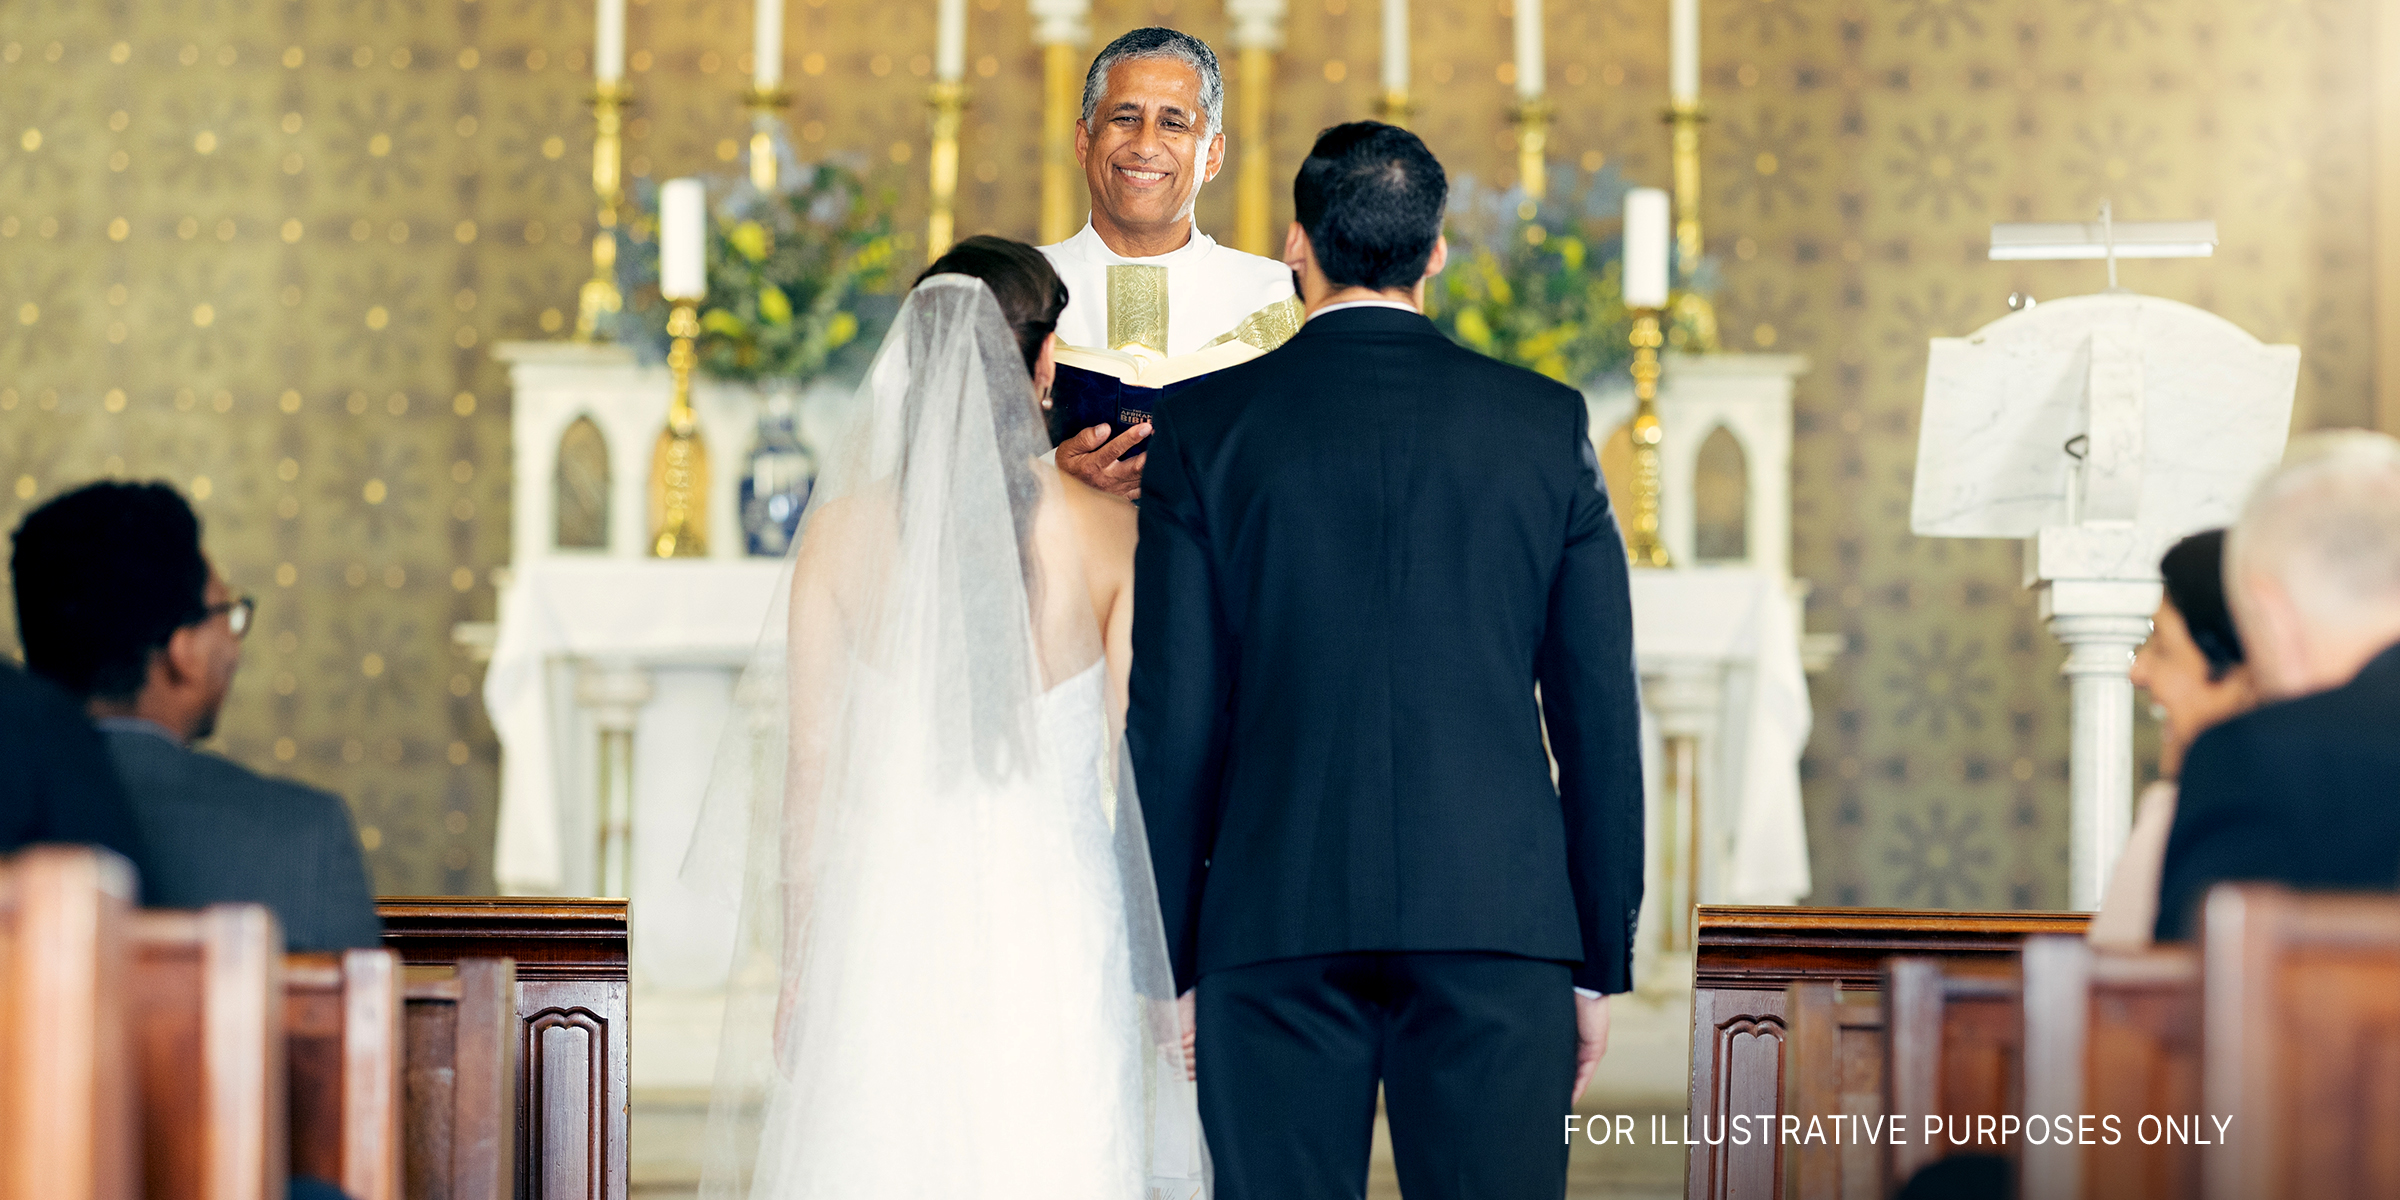 Ehepaar vor dem Priester in der Kapelle | Quelle: Shutterstock